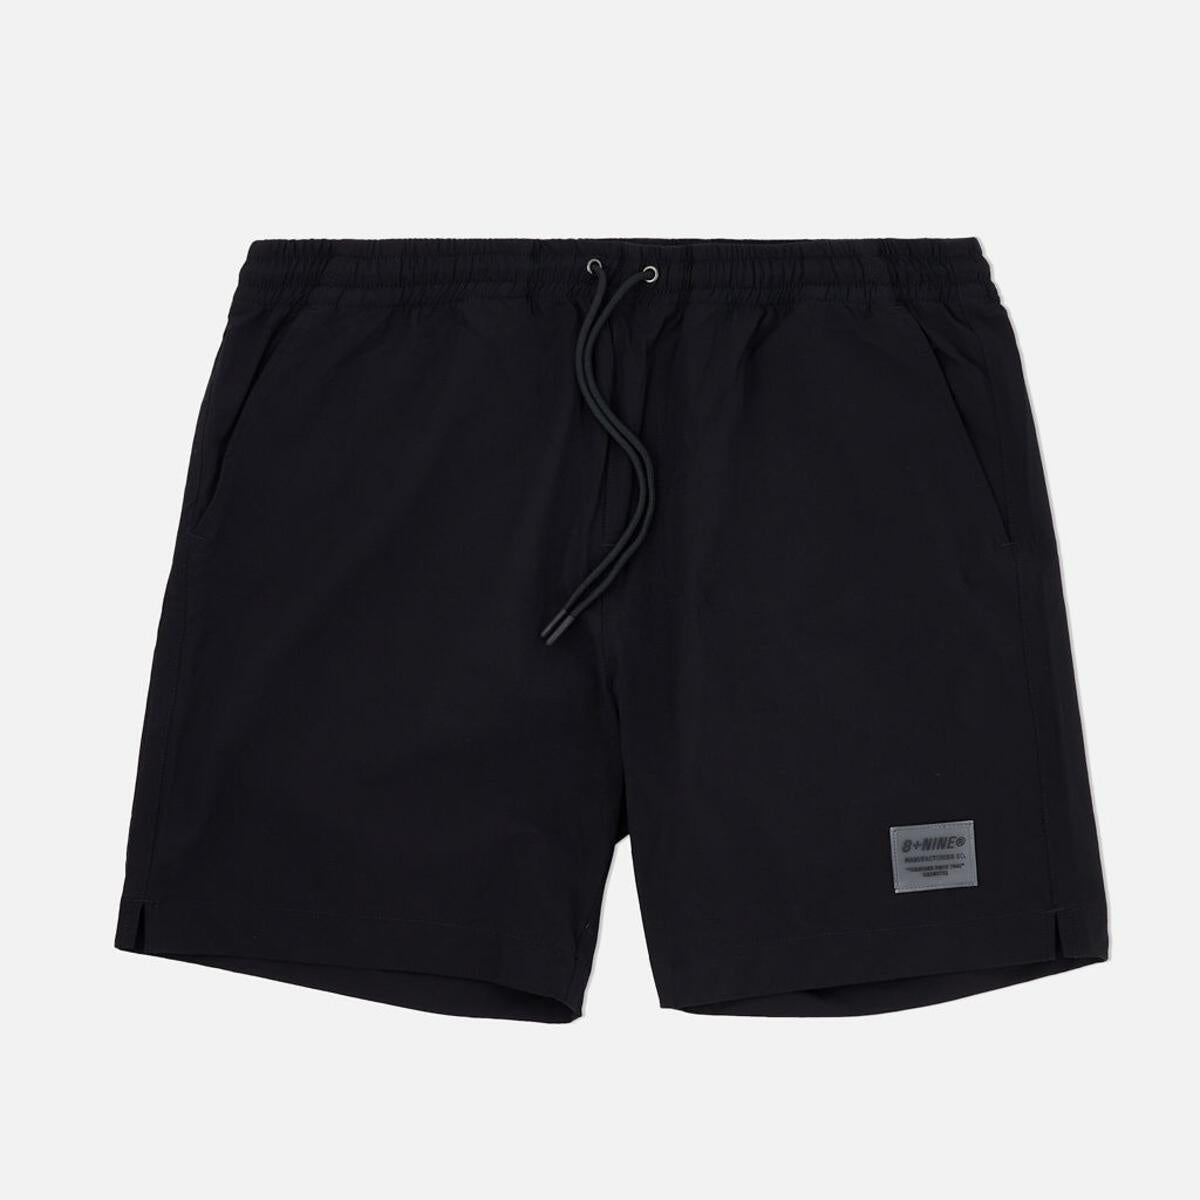 8&9 Black Vibe Shorts (SHVIBBLK)